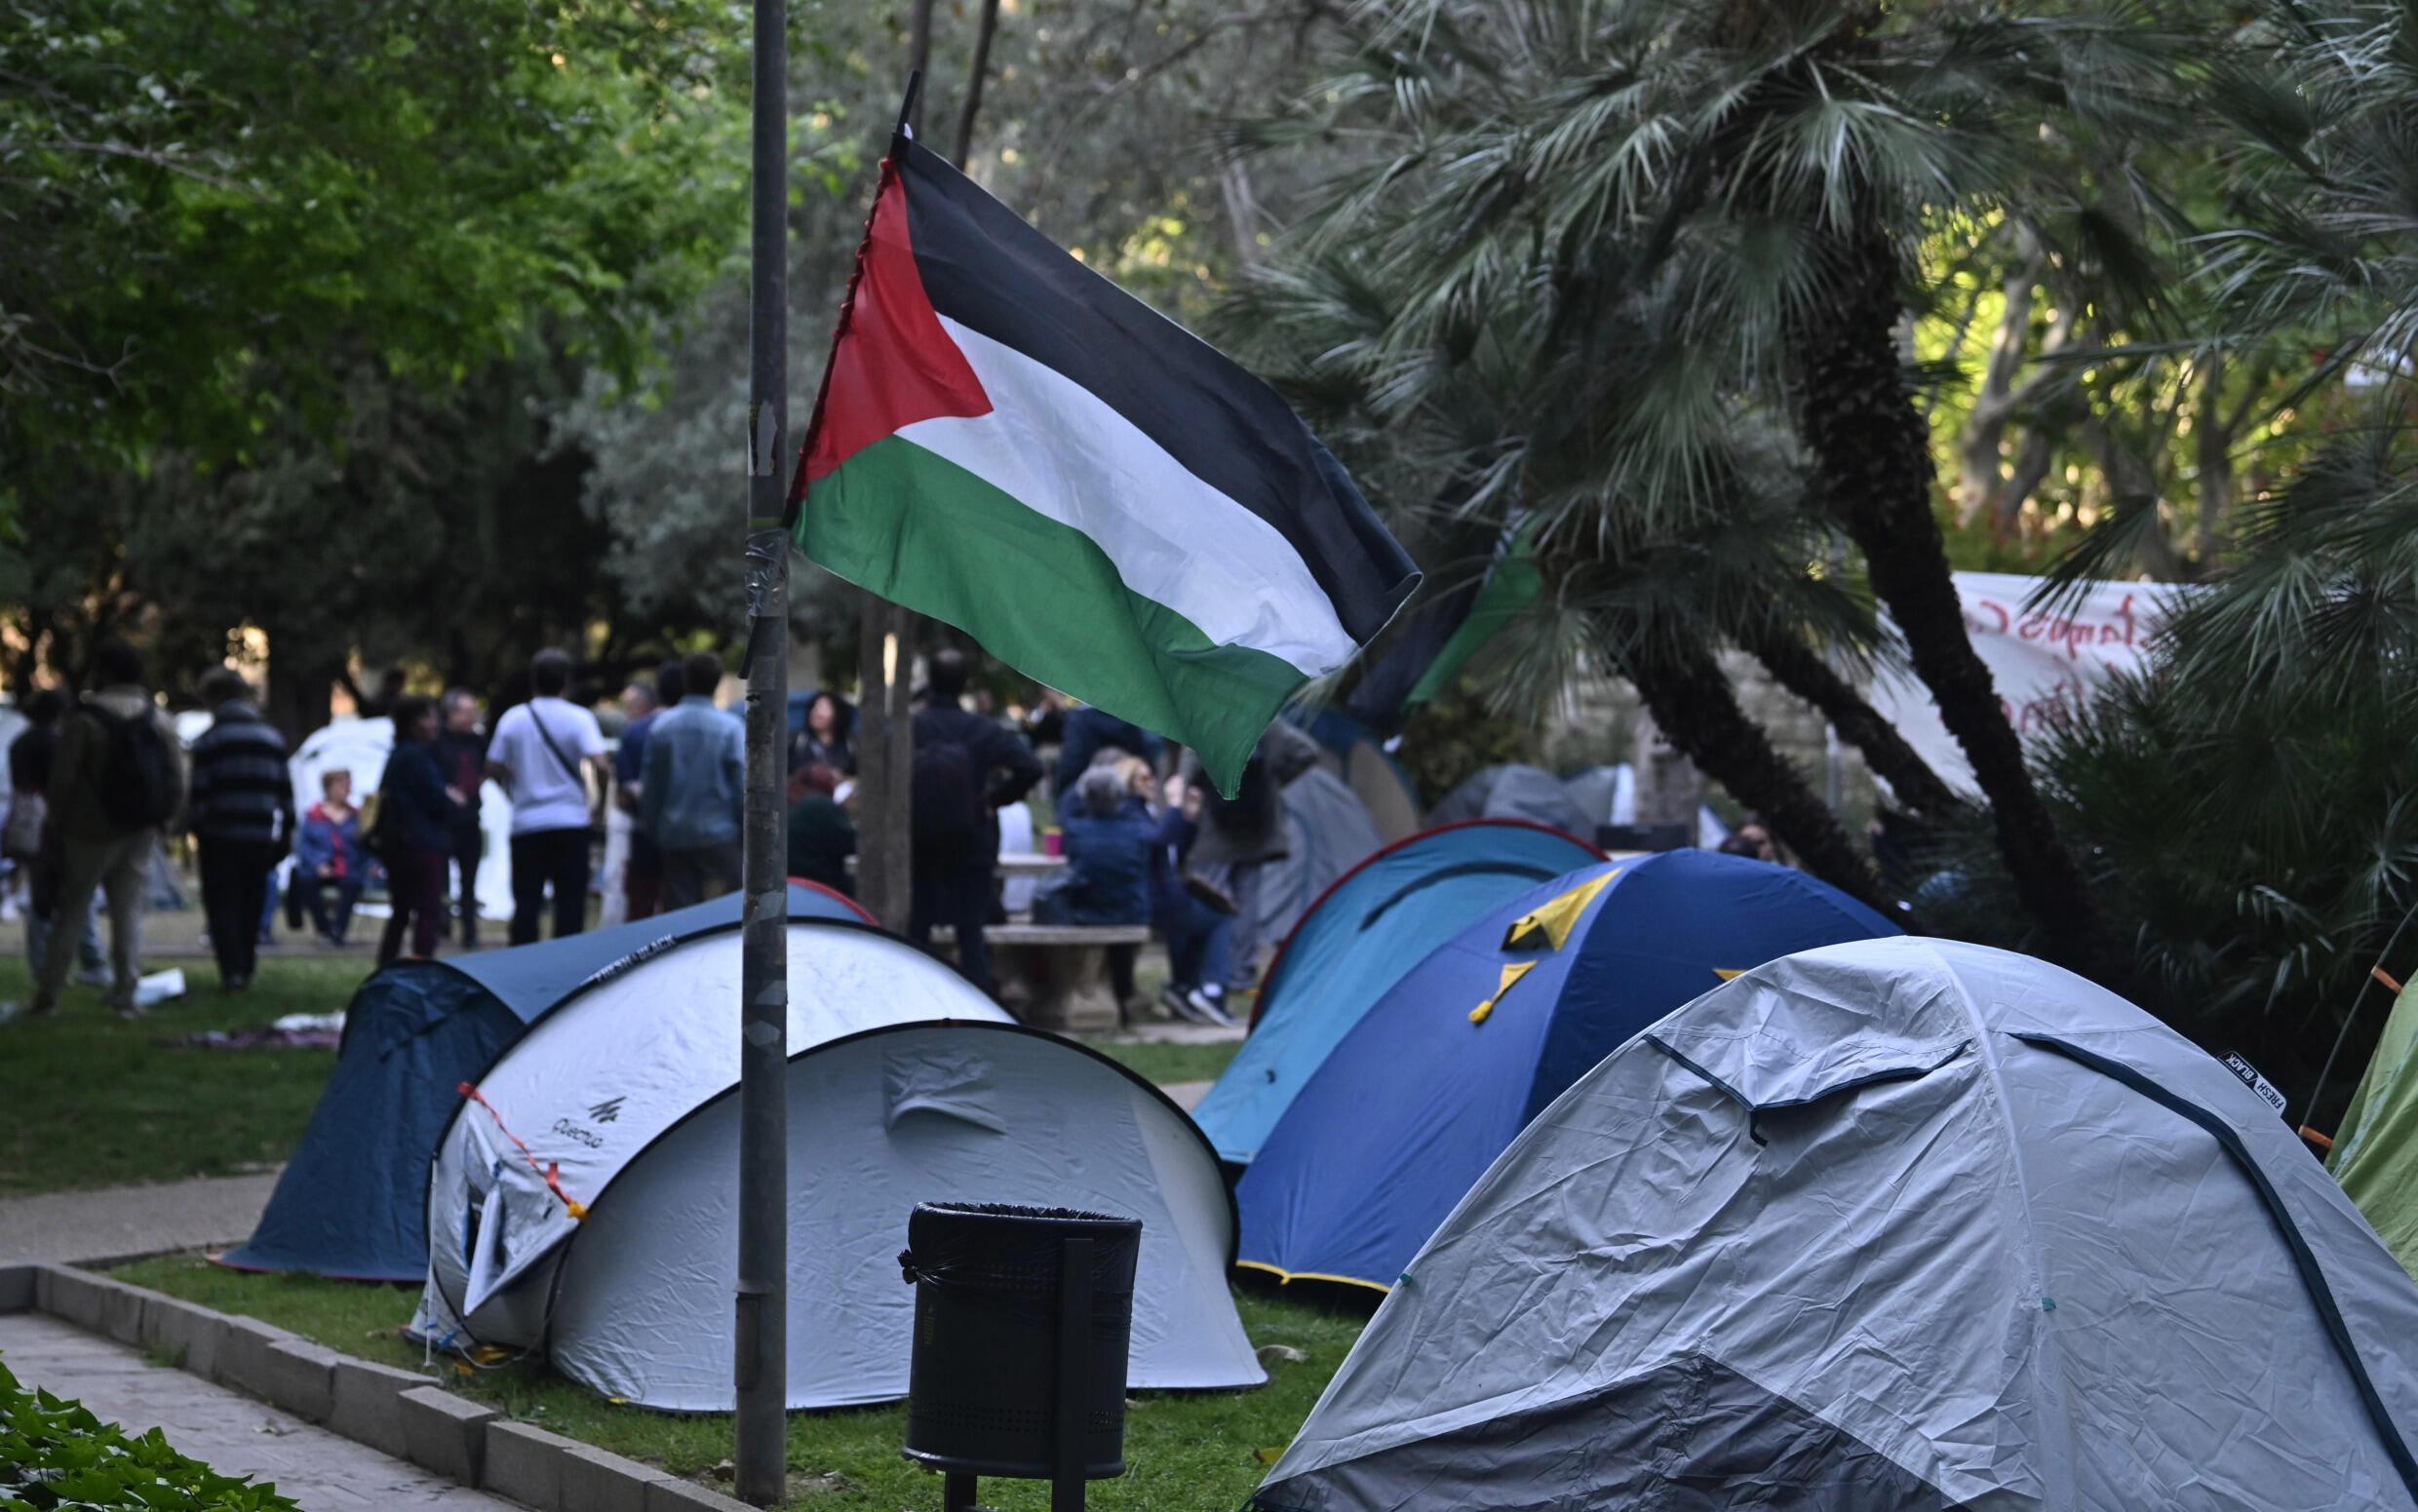 Eine palästinensische Flagge weht an einem Lager auf dem Campus der Universität Valencia in Spanien, Teil der Proteste, die sich auf der ganzen Welt ausbreiteten, nachdem sie auf Campusgeländen in den Vereinigten Staaten begonnen hatten.